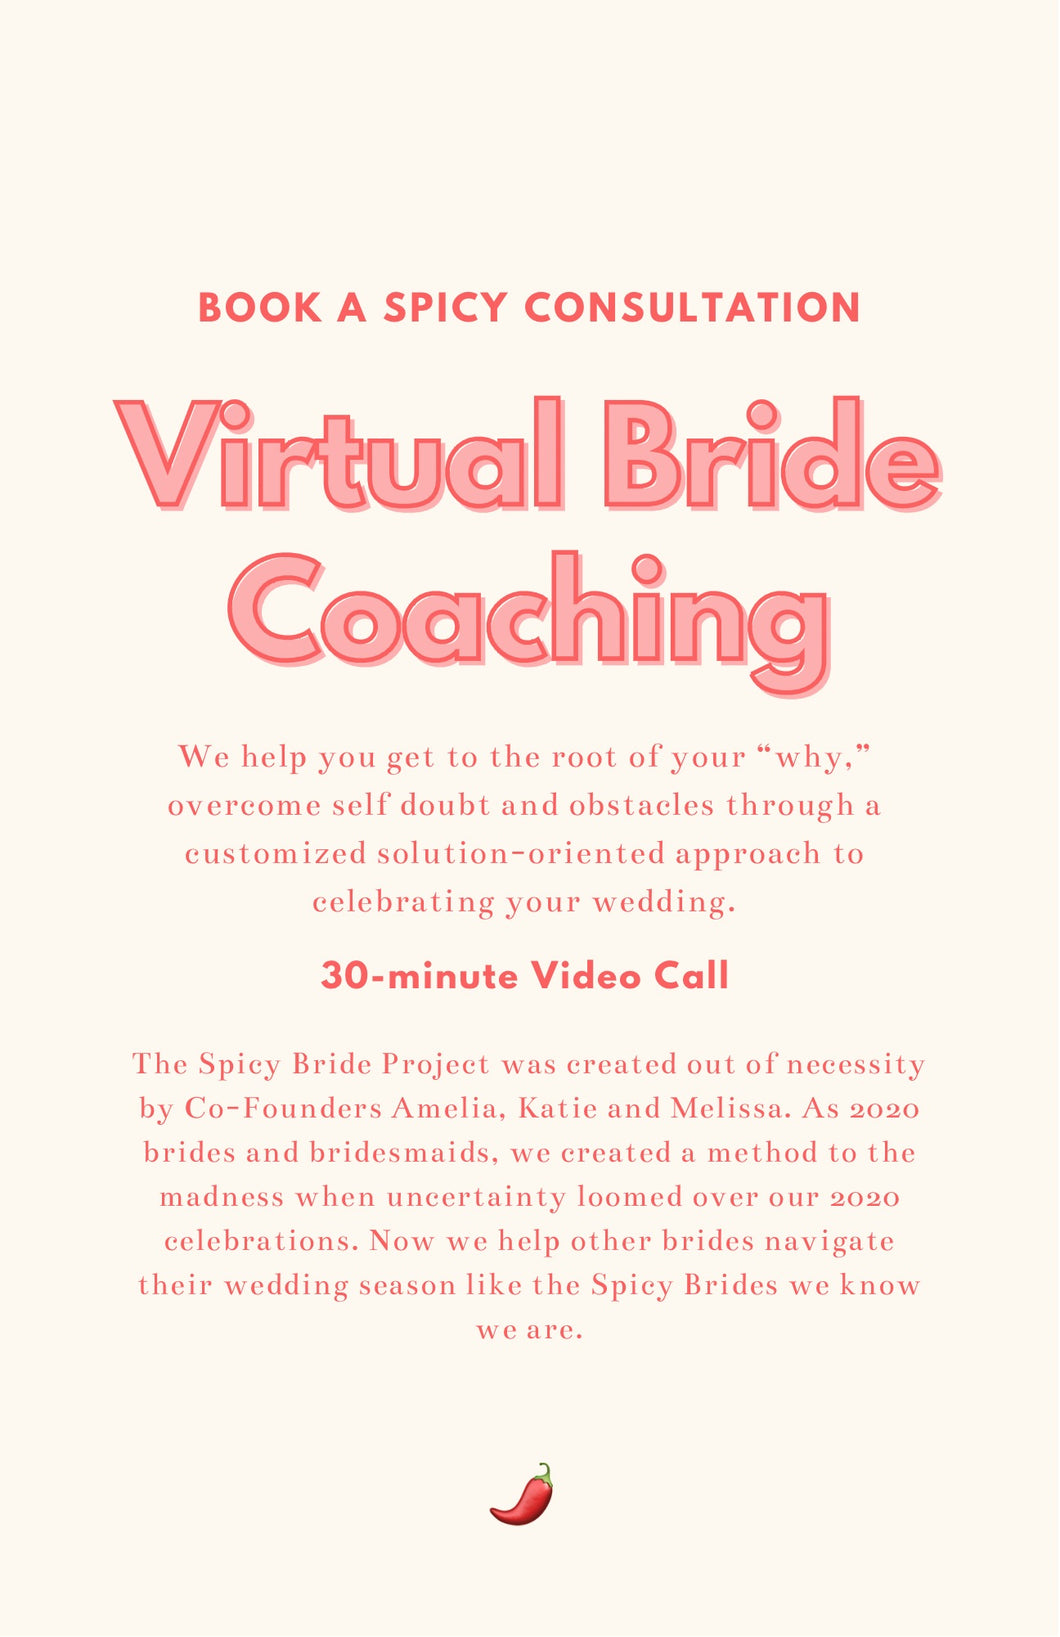 Virtual Bride Coaching - FOLLOW UP